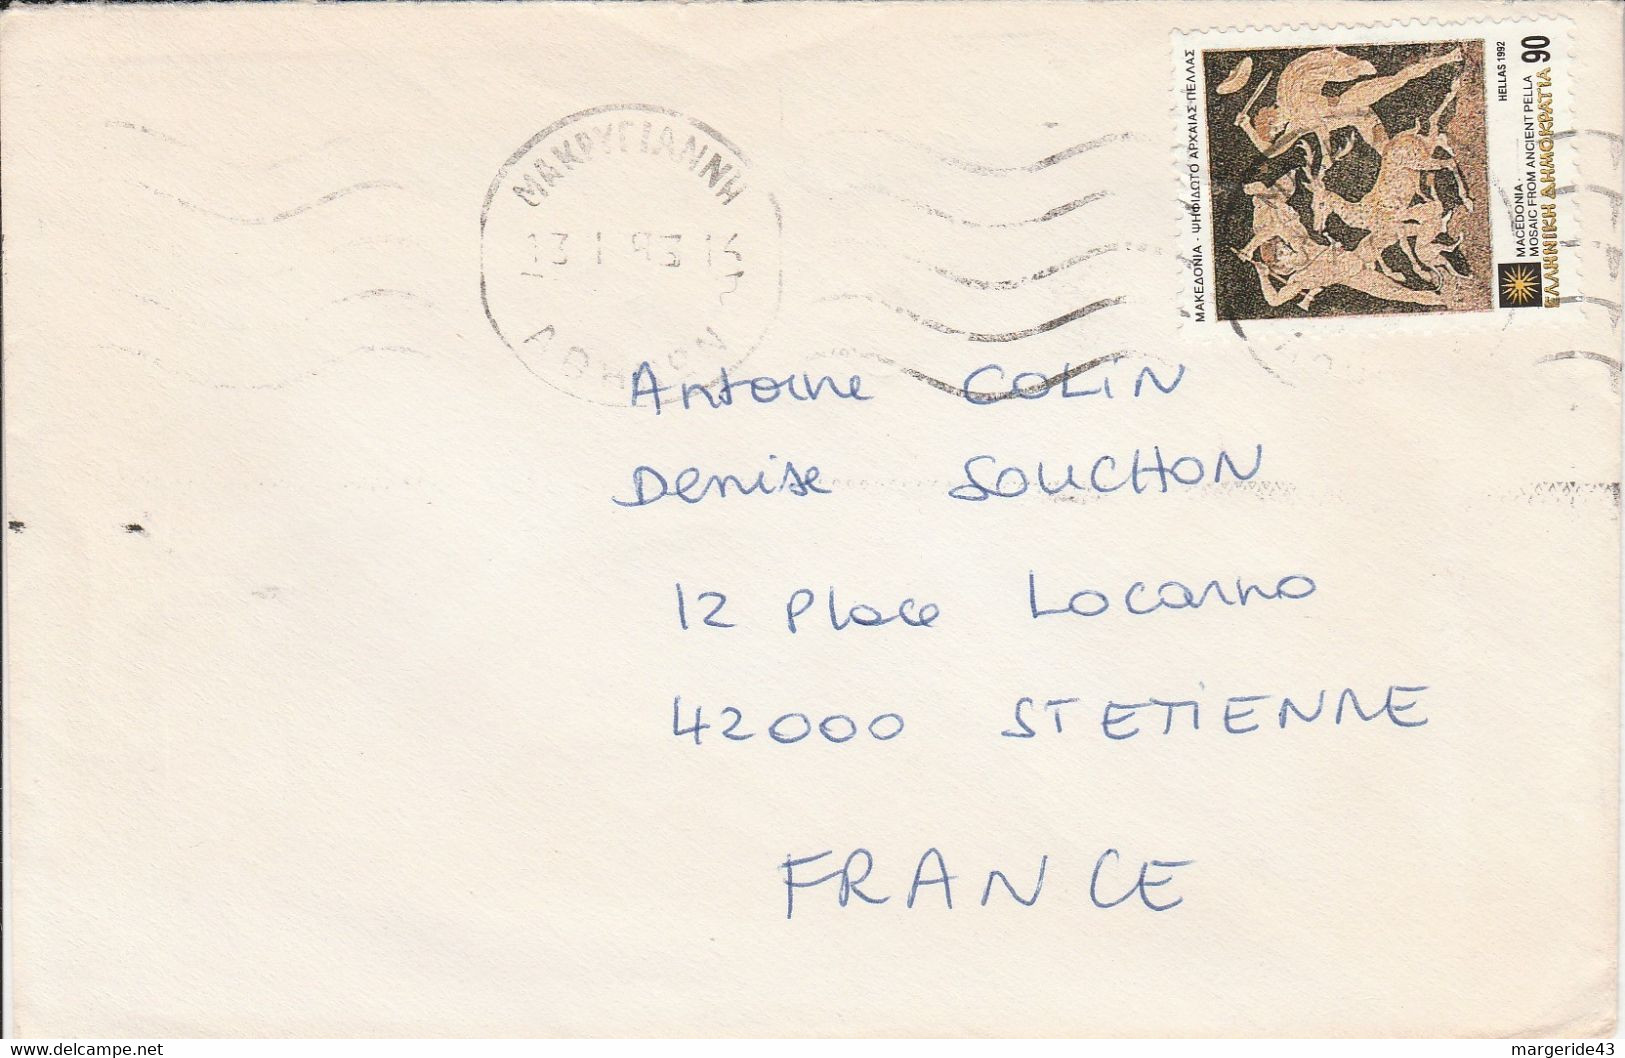 GRECE SEUL SUR LETTRE POUR LA FRANCE 1993 - Cartas & Documentos